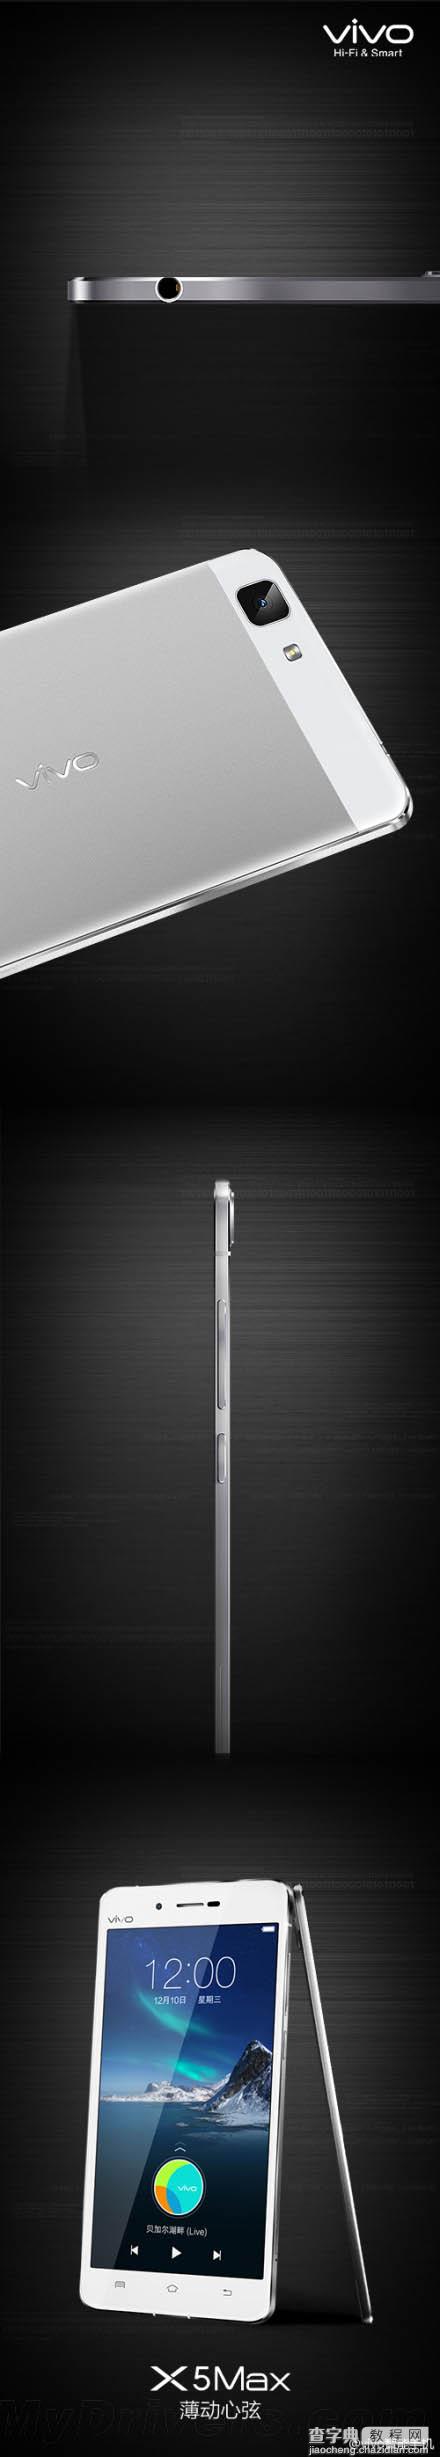 全球最薄手机vivo X5Max发布  机身厚度仅有4.75mm1